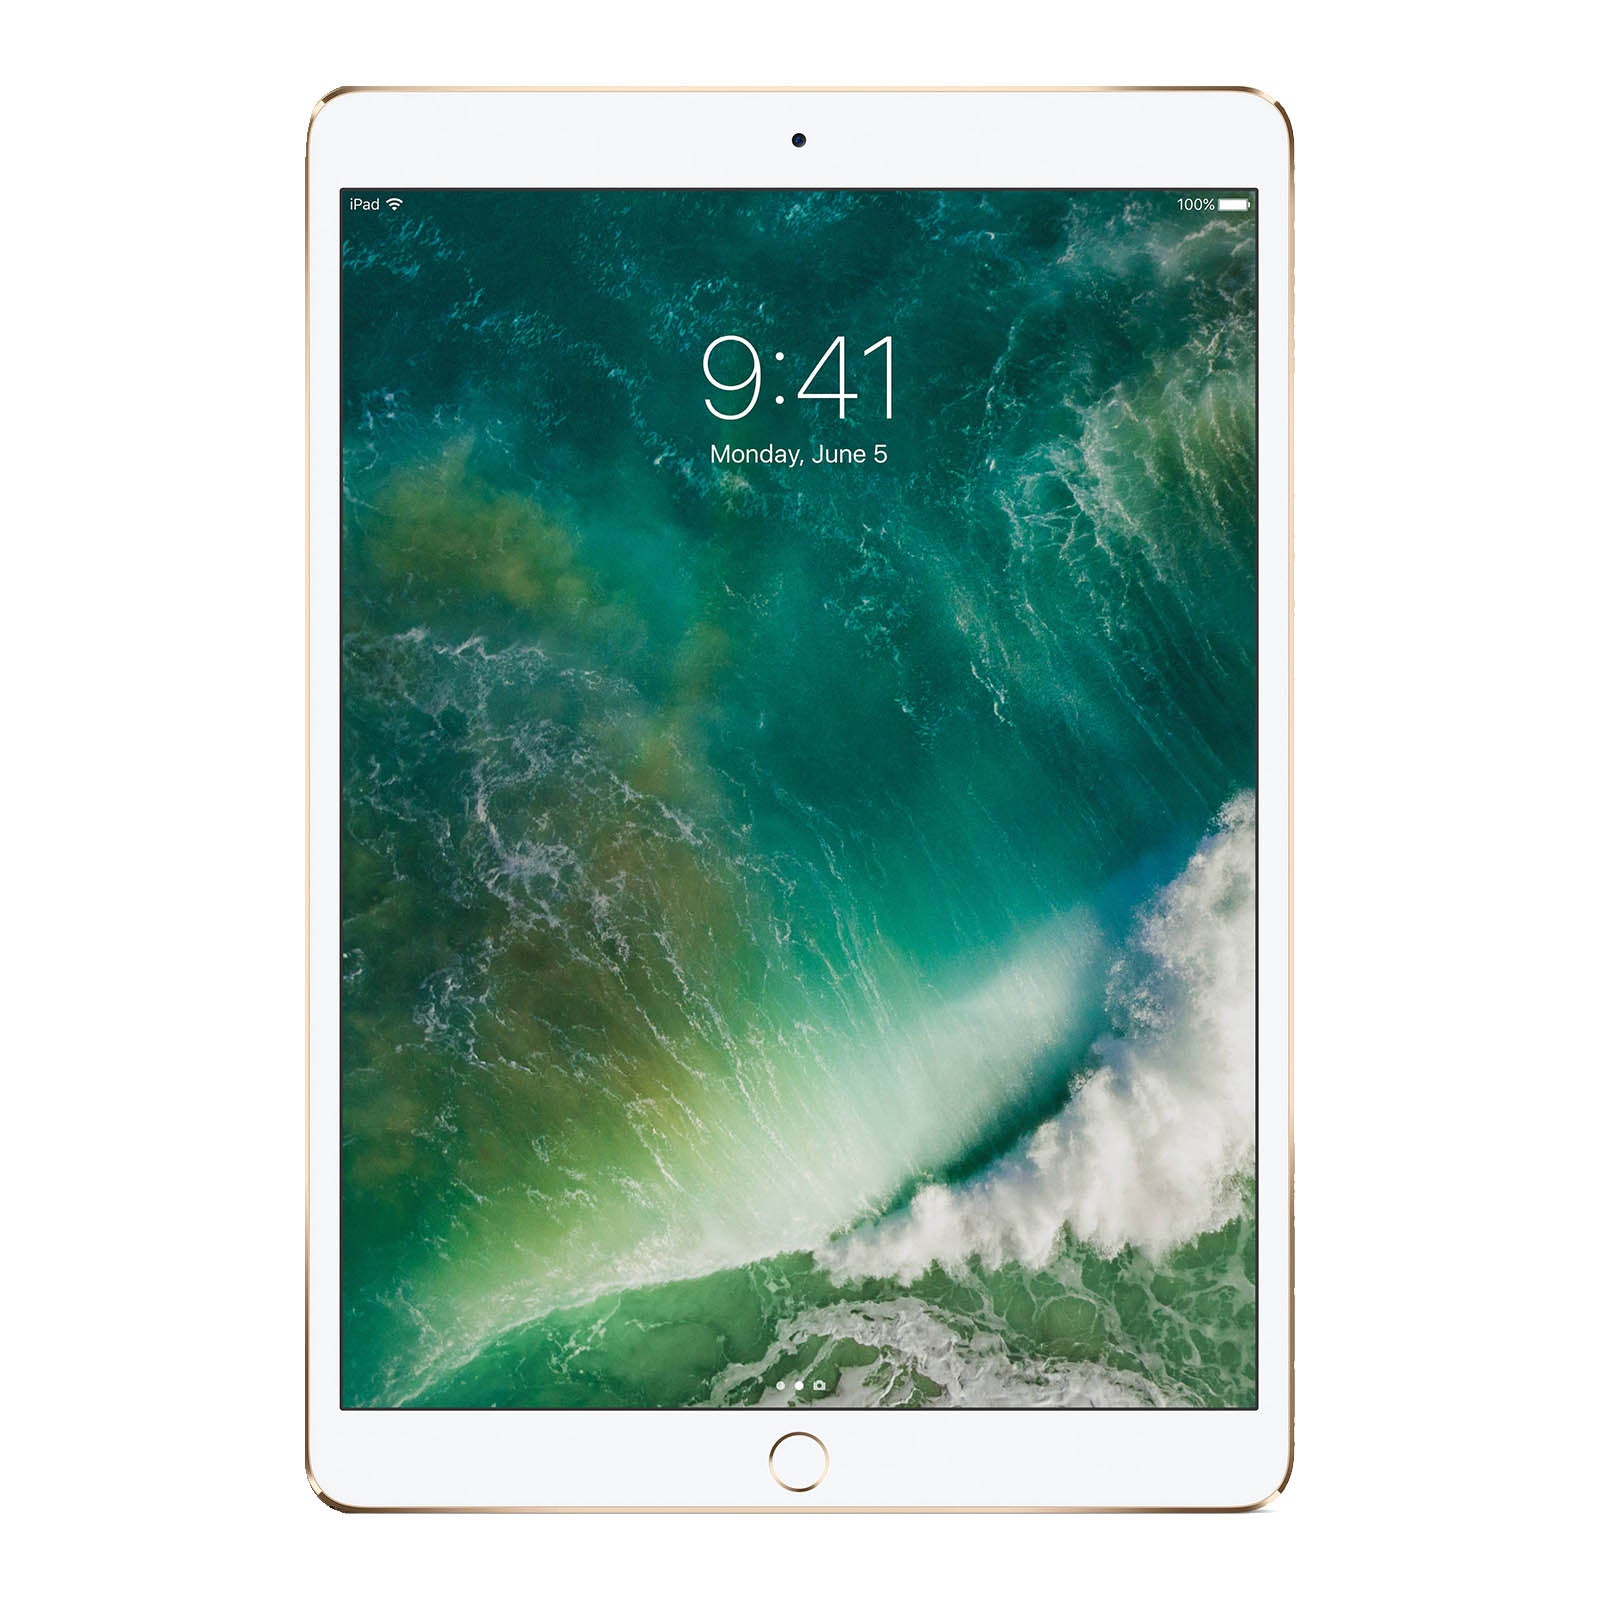 iPad Pro 10.5 Inch 256GB Gold Good - WiFi